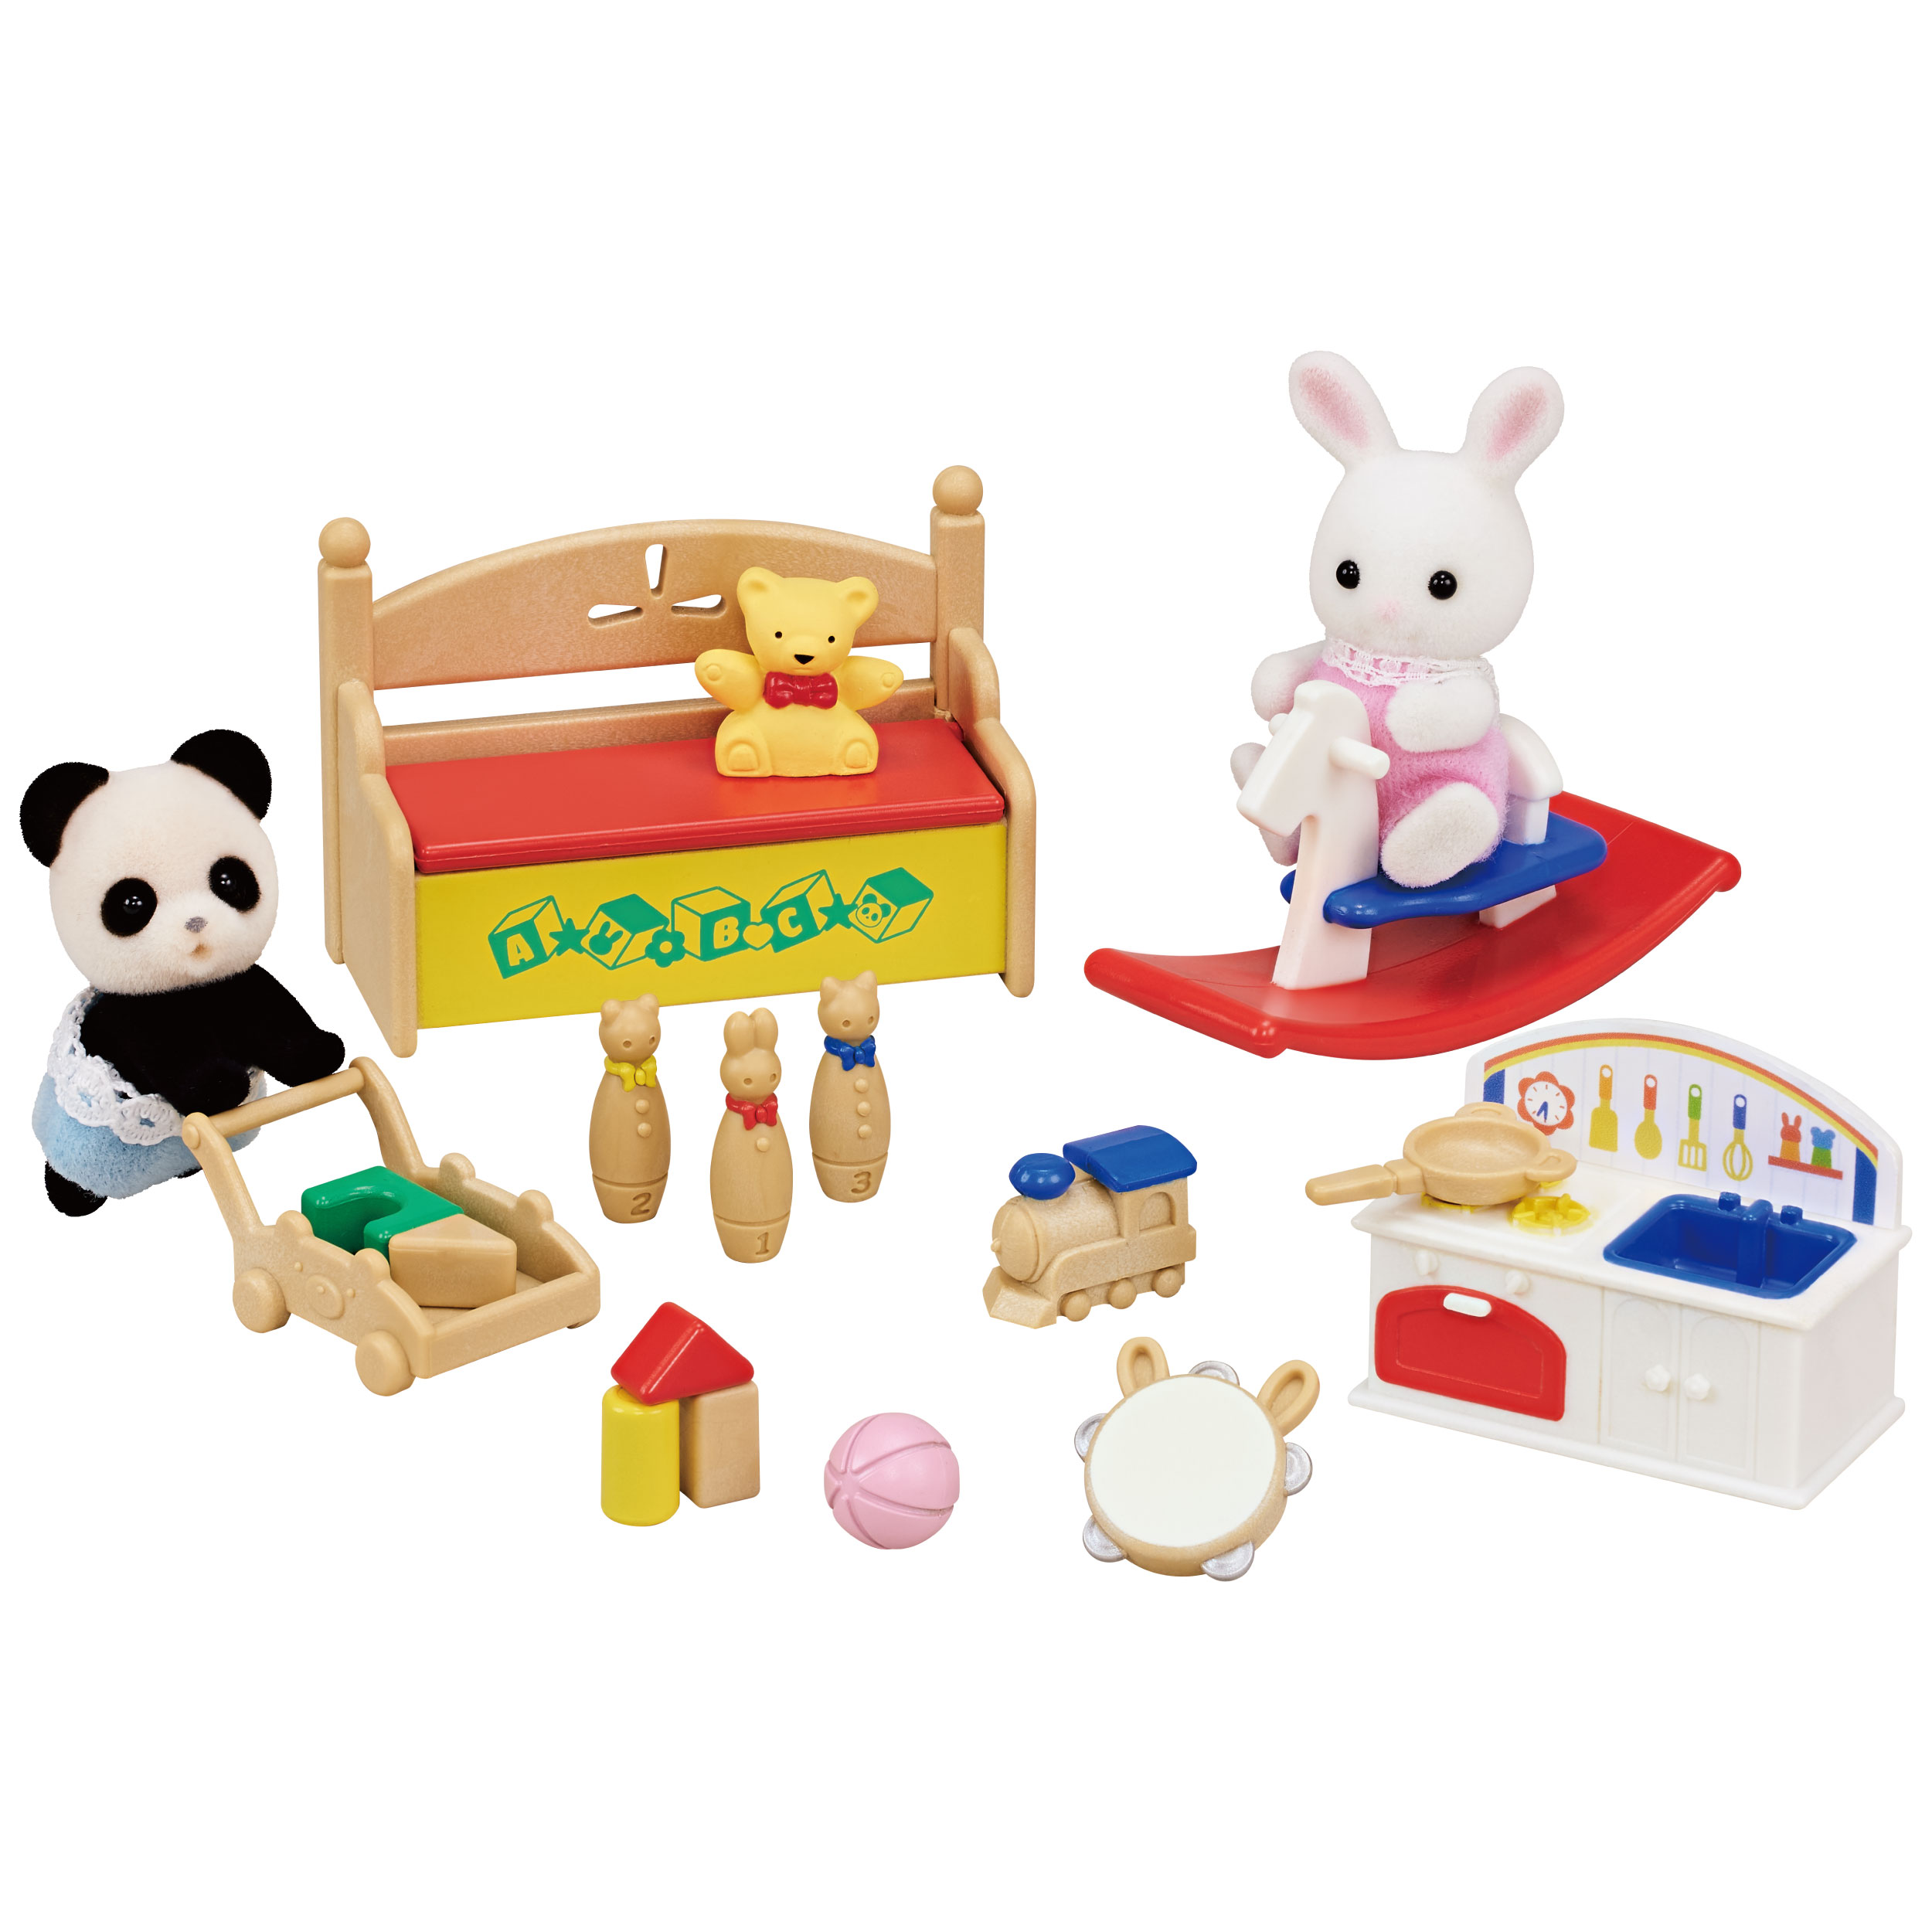 おもちゃいっぱいセット-しろウサギ・パンダの赤ちゃん- / 家具と人形セット - シルバニアファミリーオンラインショップ